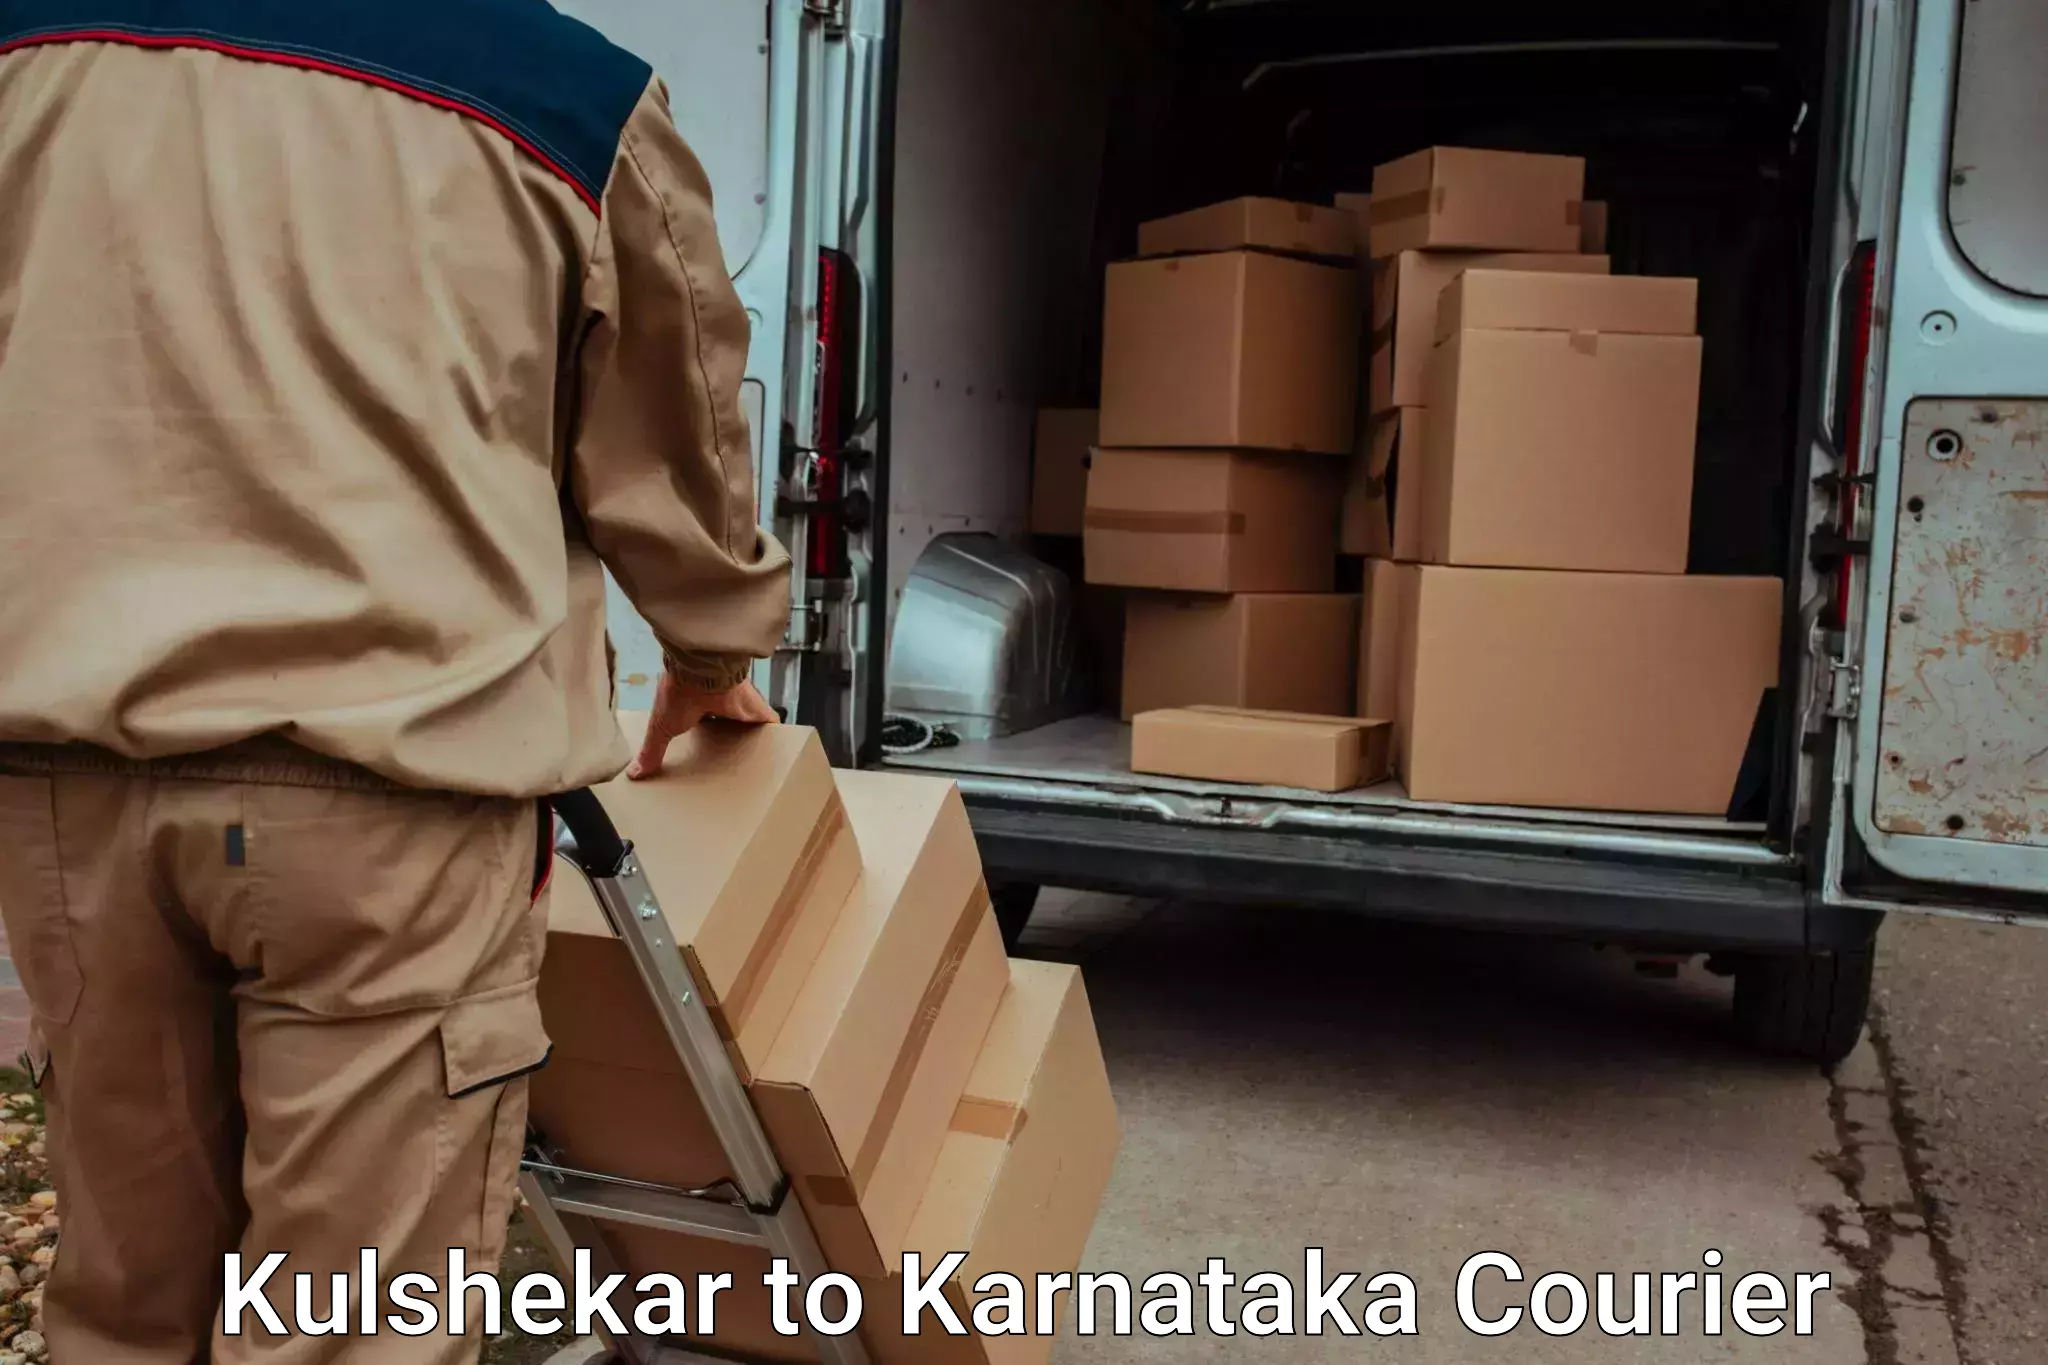 Luggage transport consulting Kulshekar to Sindhanur